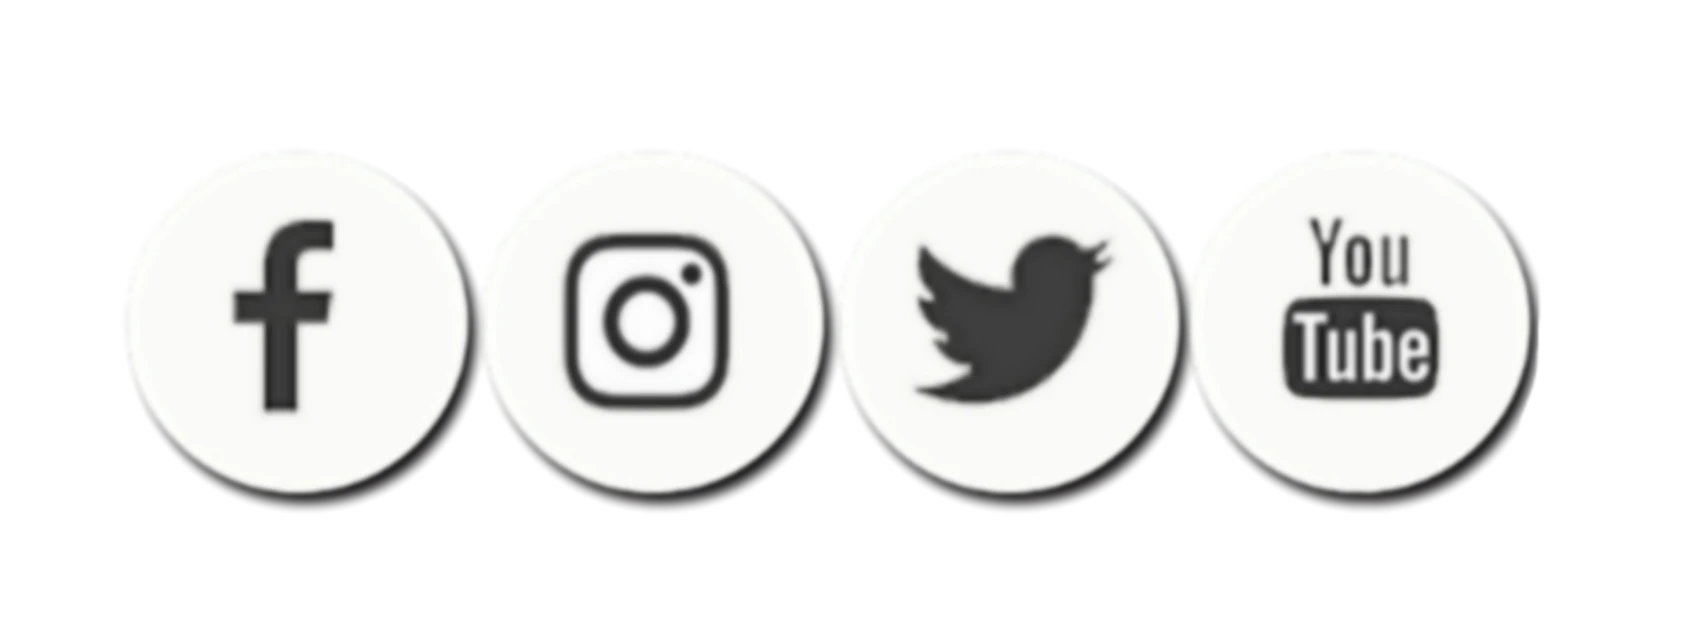 Facebook Instagram Youtube logo PNG Immagine di alta qualità